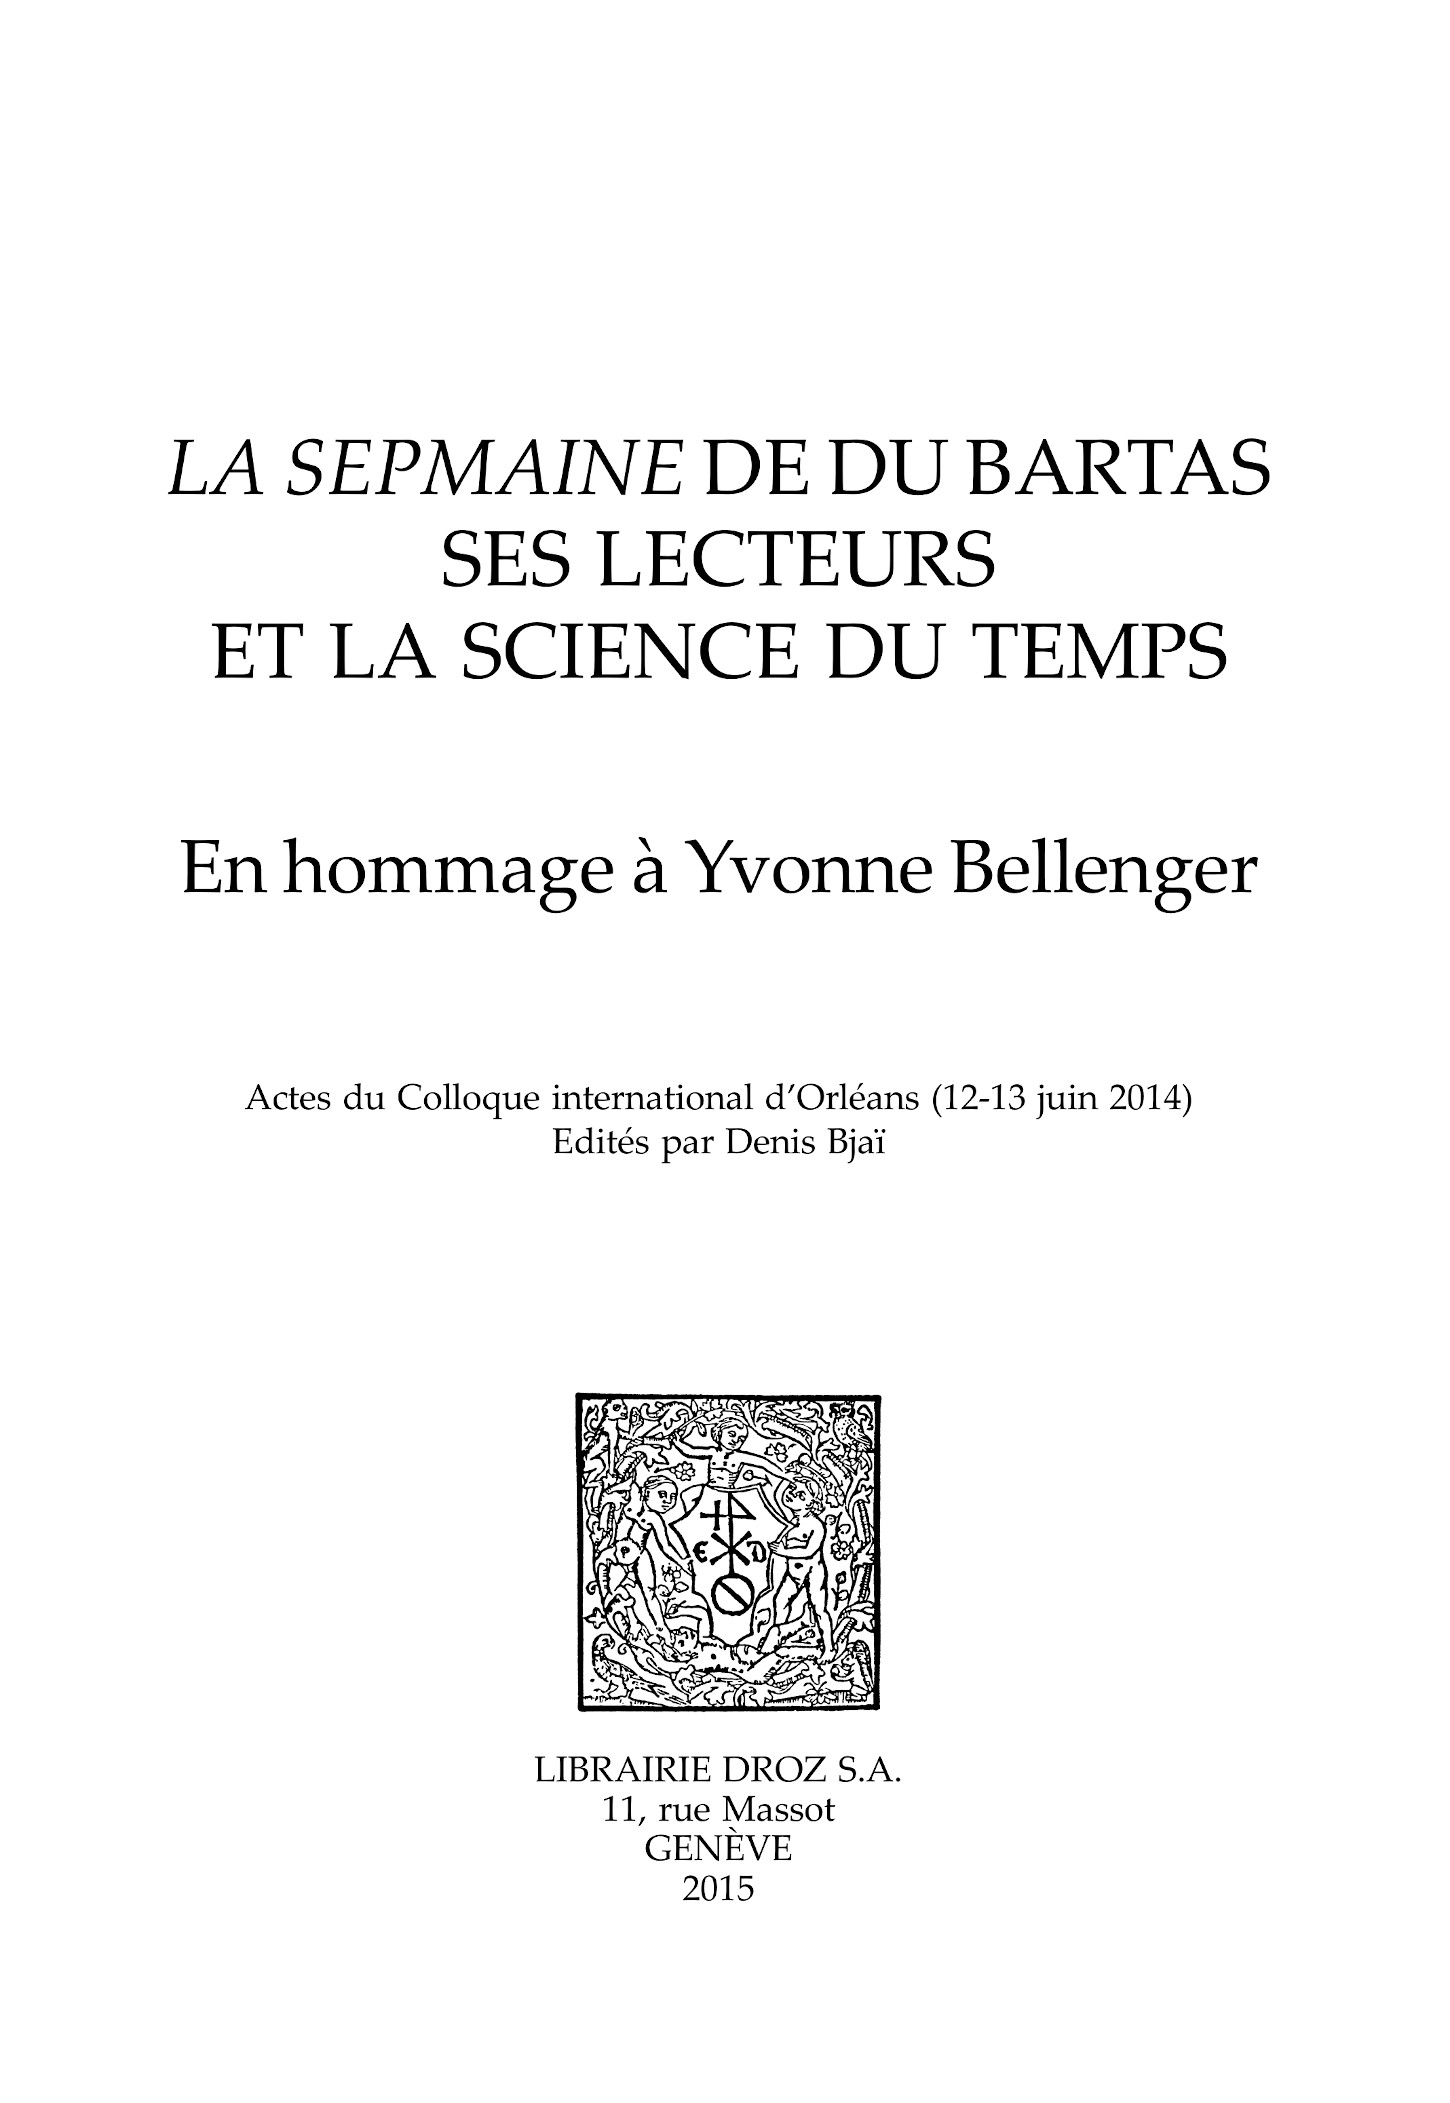 La Sepmaine de Du Bartas, ses lecteurs et la science du temps  - Librairie Droz